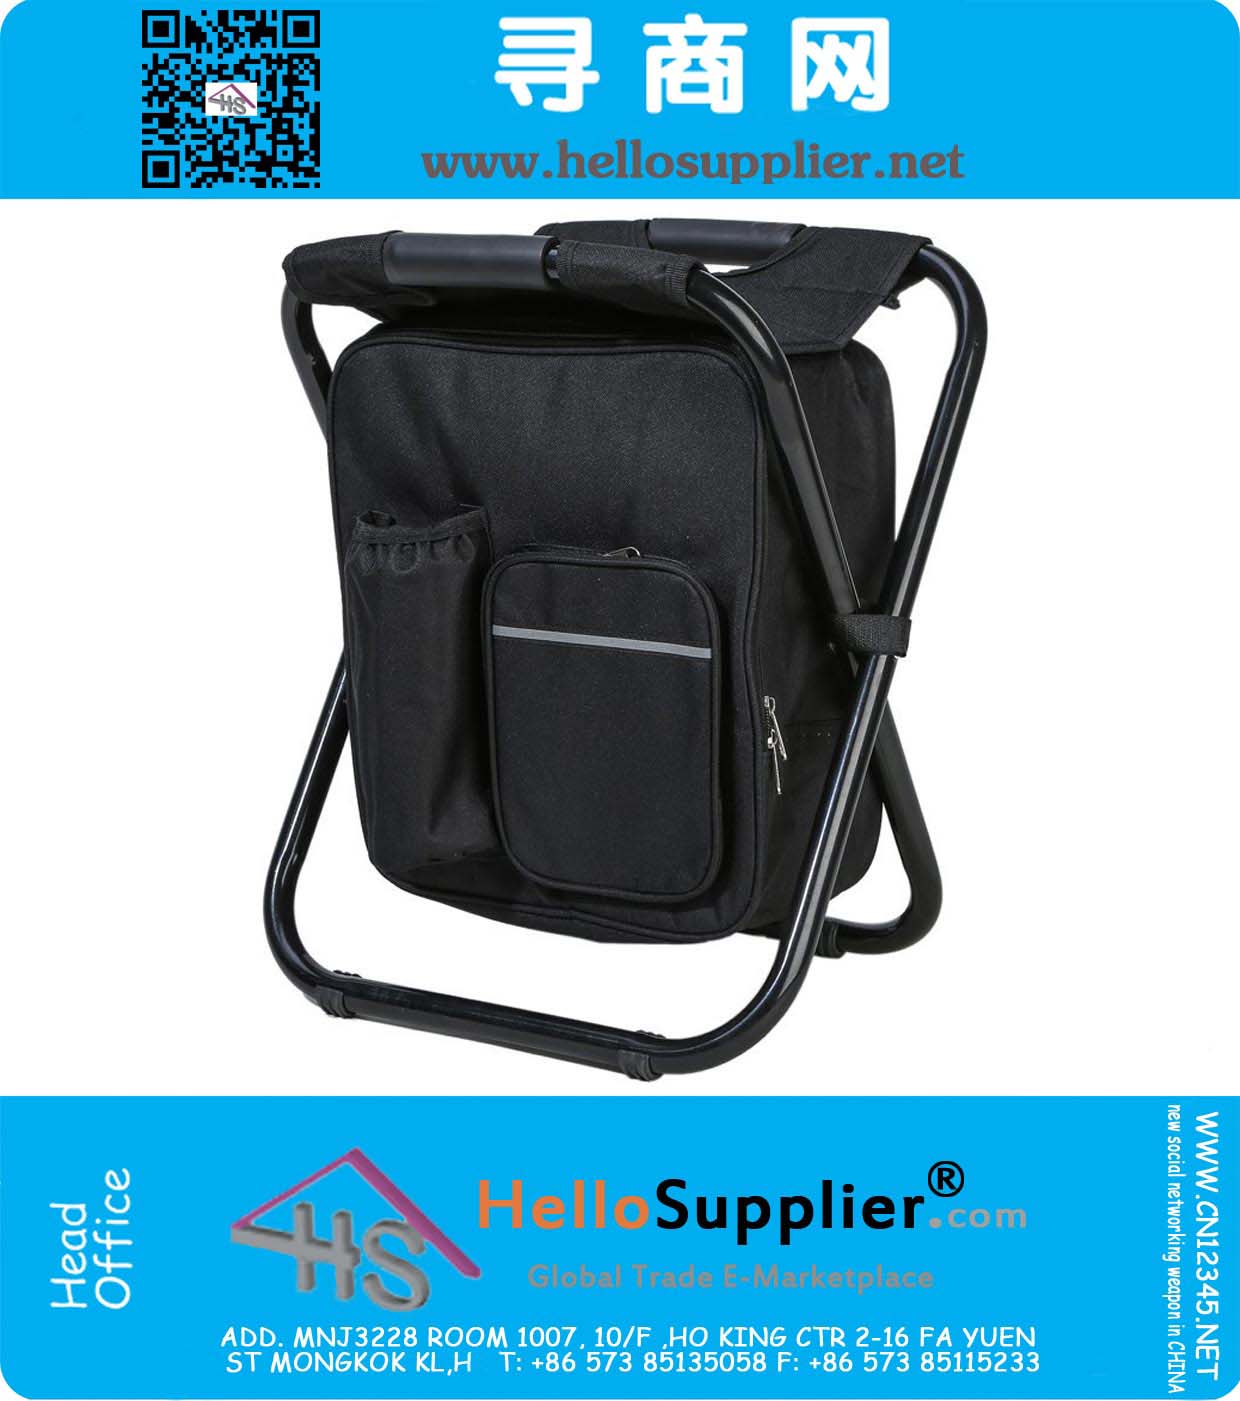 Silla plegable de la mochila multifuncional con un bolso más fresco para pescar, playa, acampar y excursión